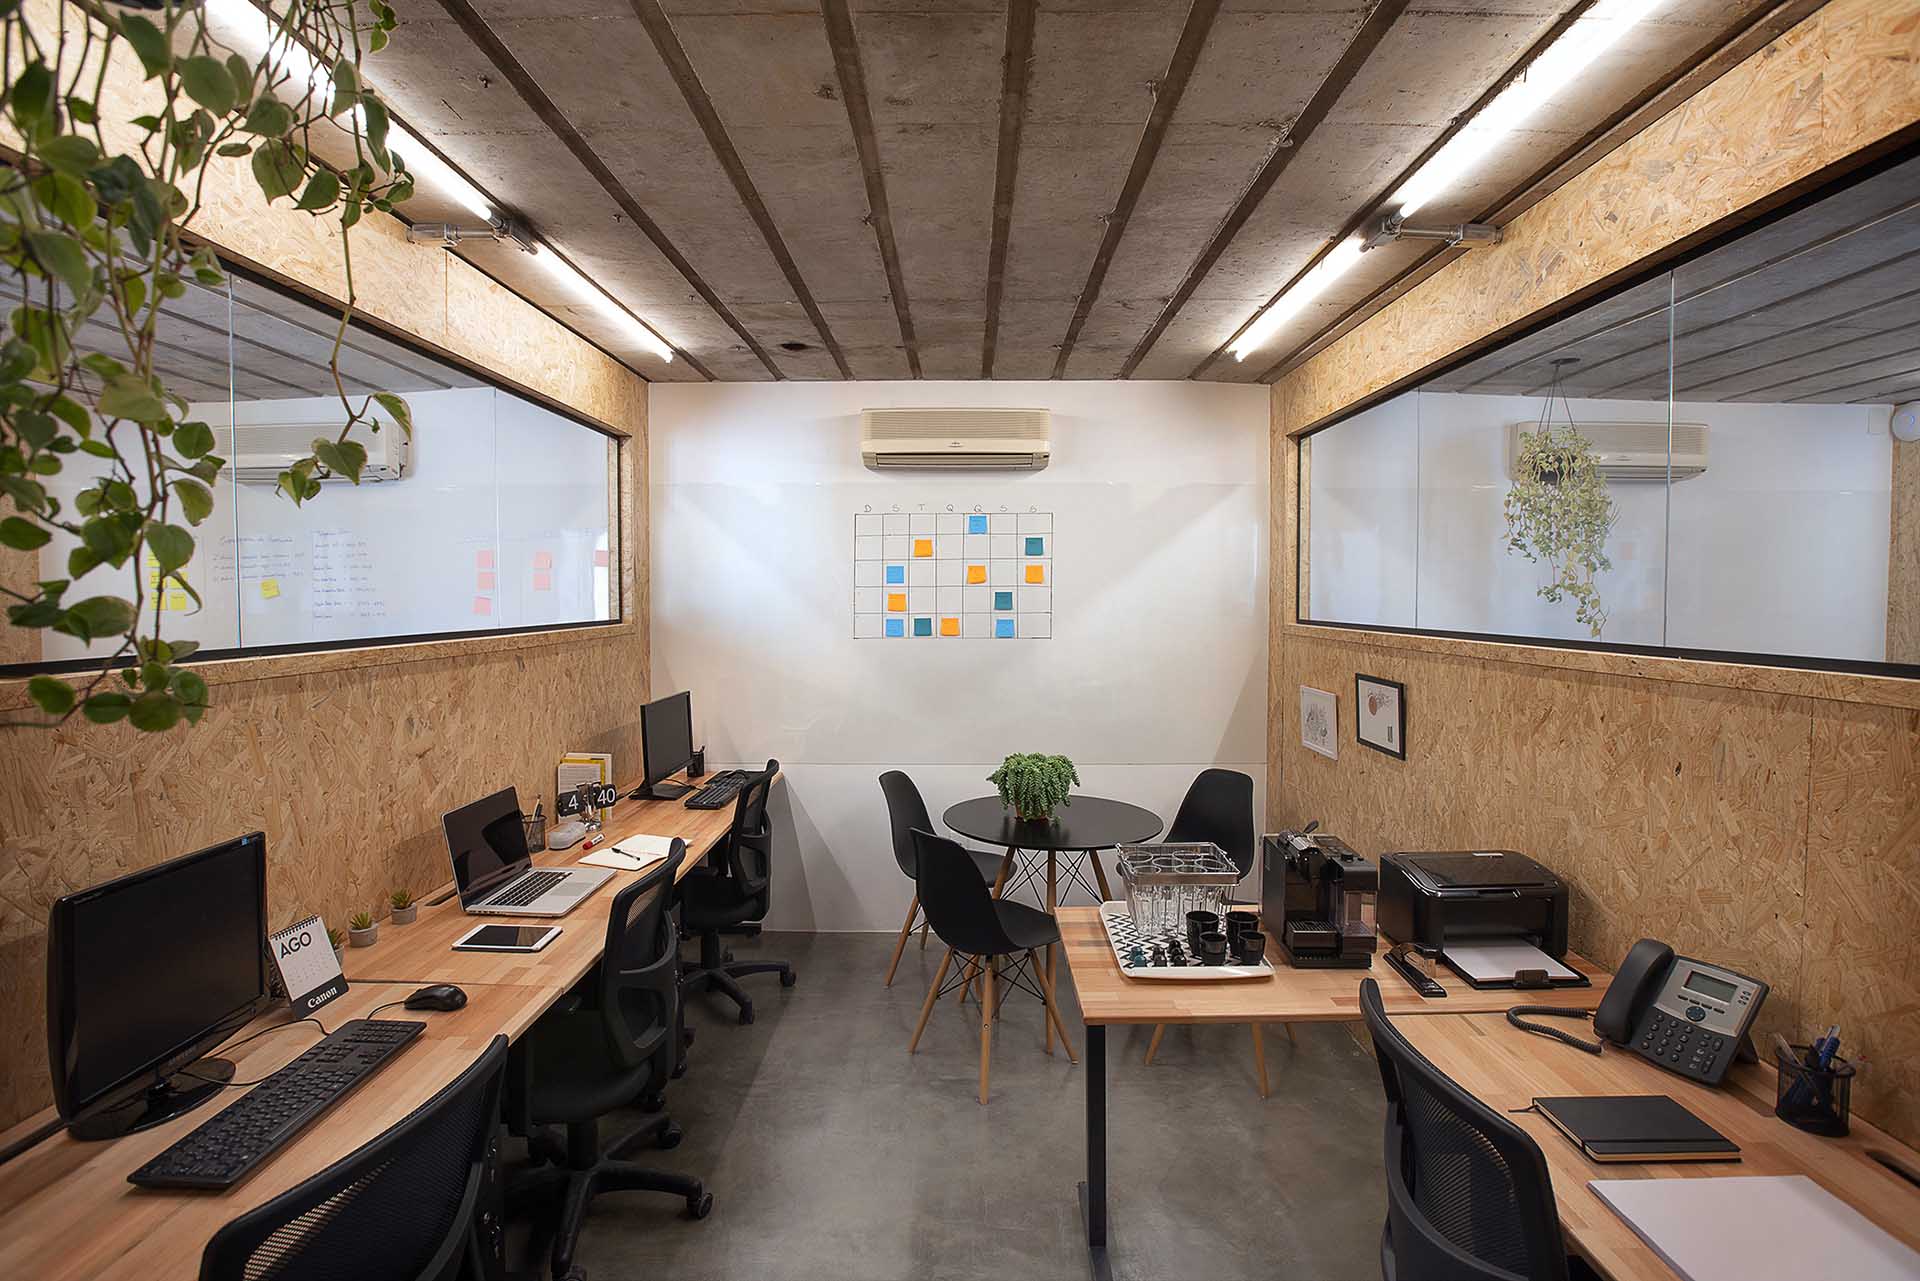 Sala privativa na Berrini para até 6 pessoas com computadores, mesas flexíveis e uma planta pendurada